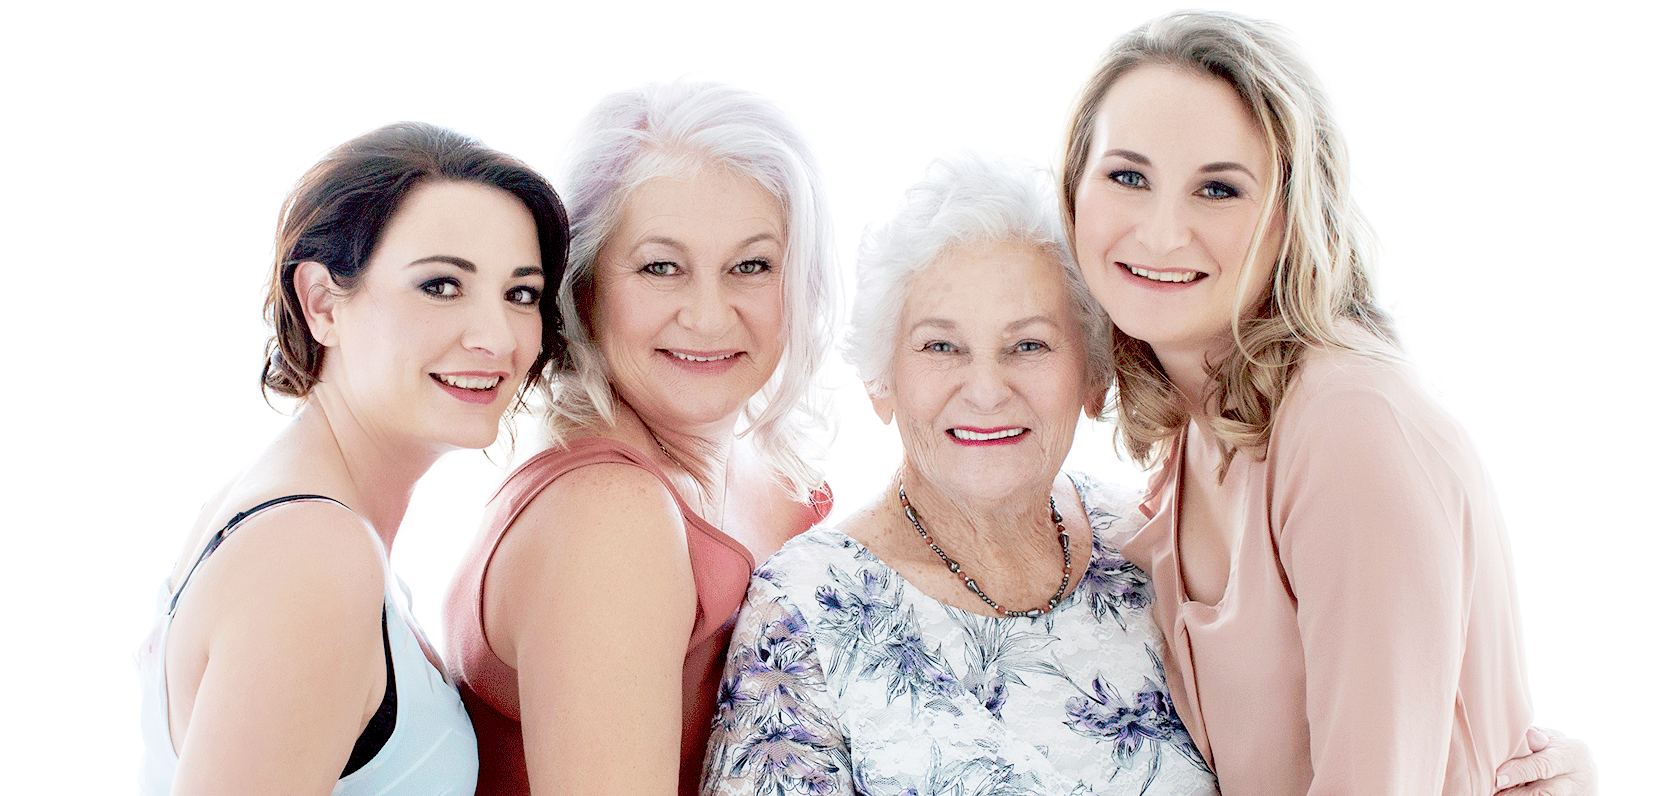 Vier lächelnde Frauen unterschiedlichen Alters vor einem hellen Hintergrund